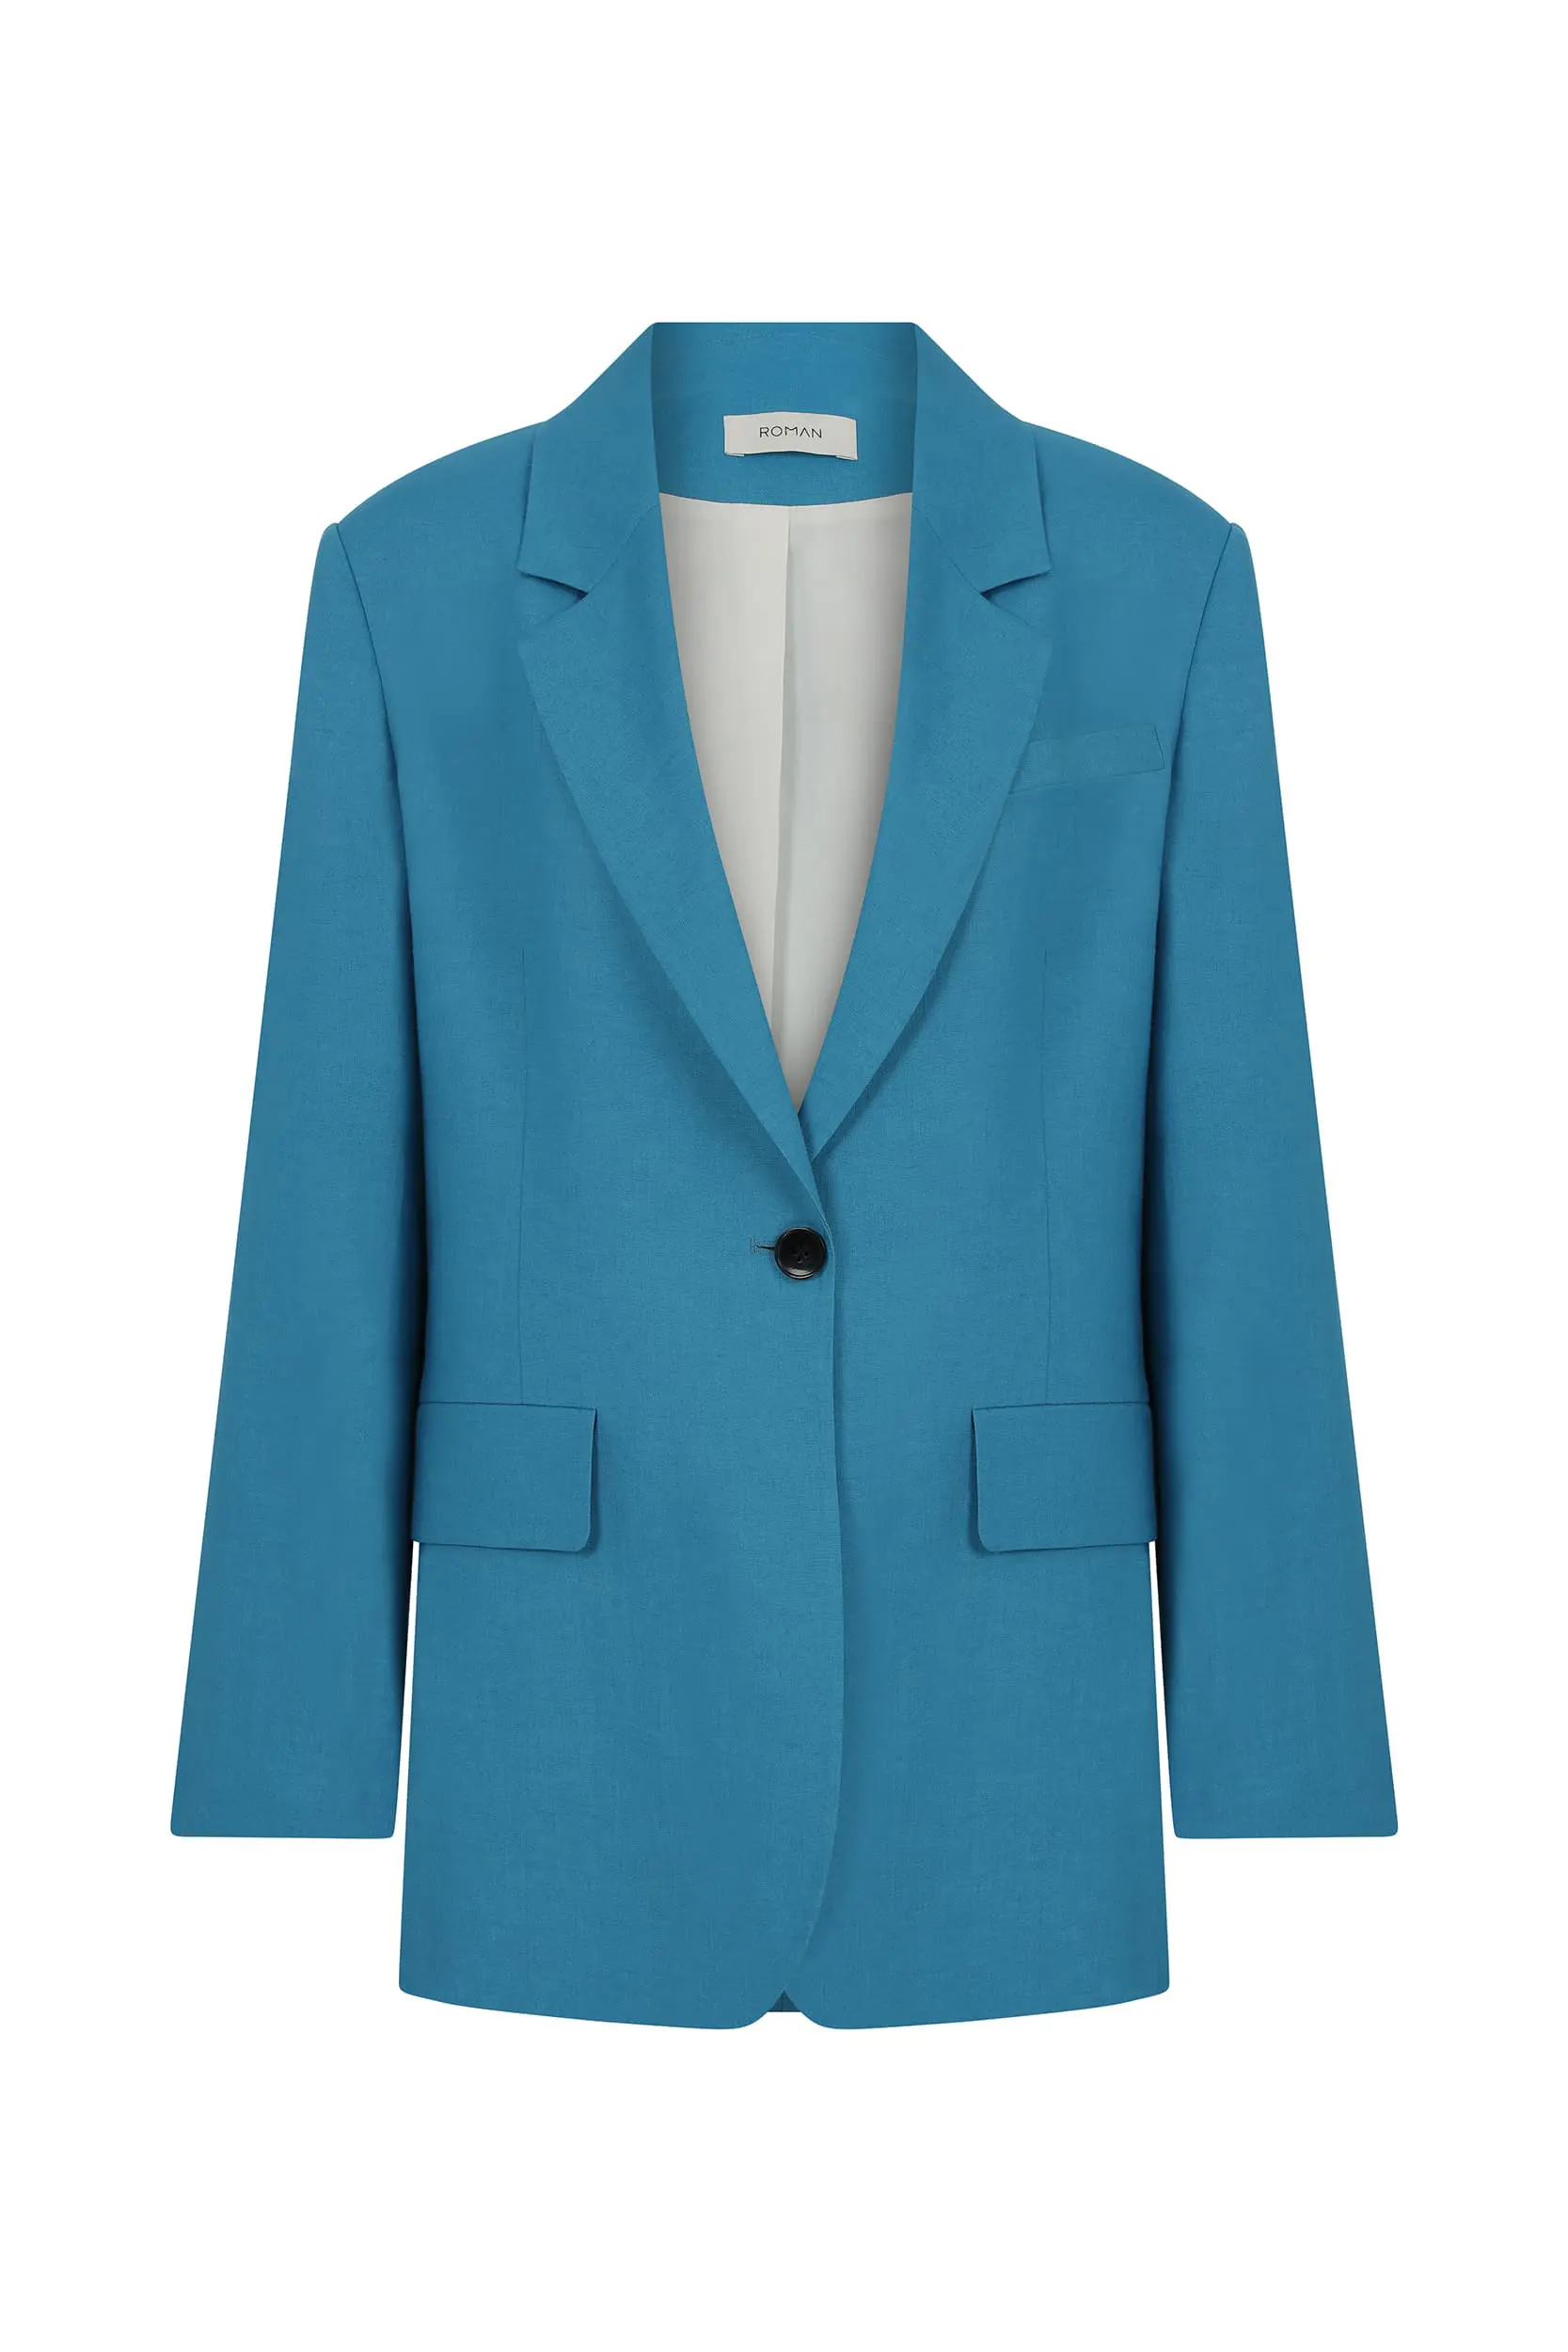 Roman Pocket Turquoise Jacket - 4 / Turquoise. 1